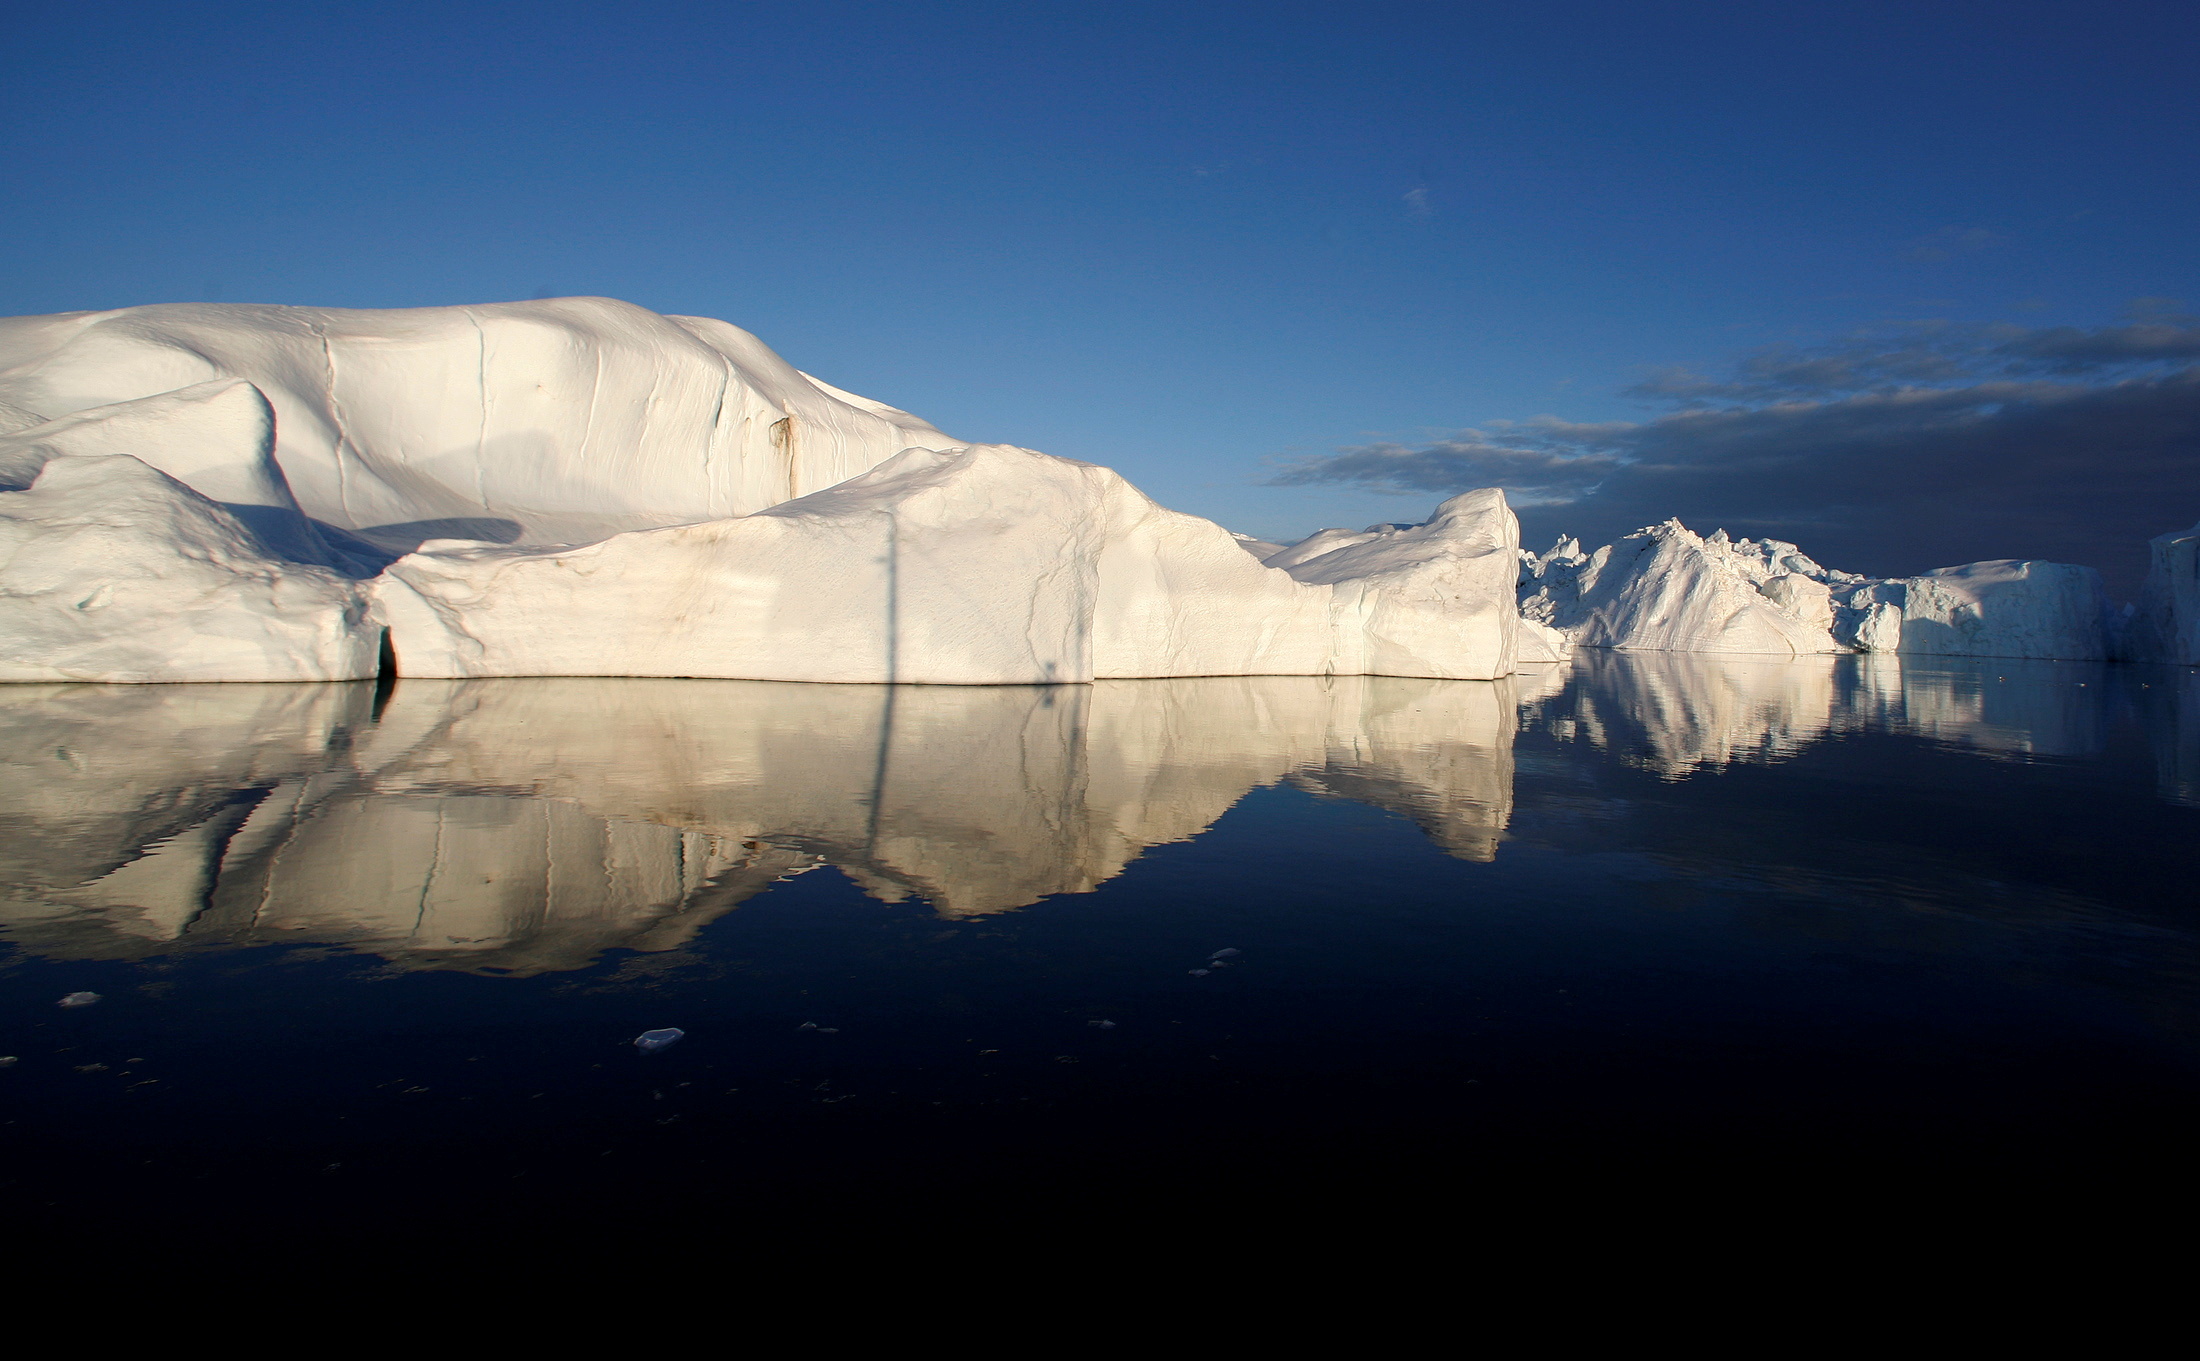 FOTO DE ARCHIVO: Los icebergs se reflejan en las aguas tranquilas de la boca del fiordo de hielo Jakobshavn, cerca de Ilulissat, Groenlandia, el 15 de mayo de 2007.  REUTERS/Bob Strong